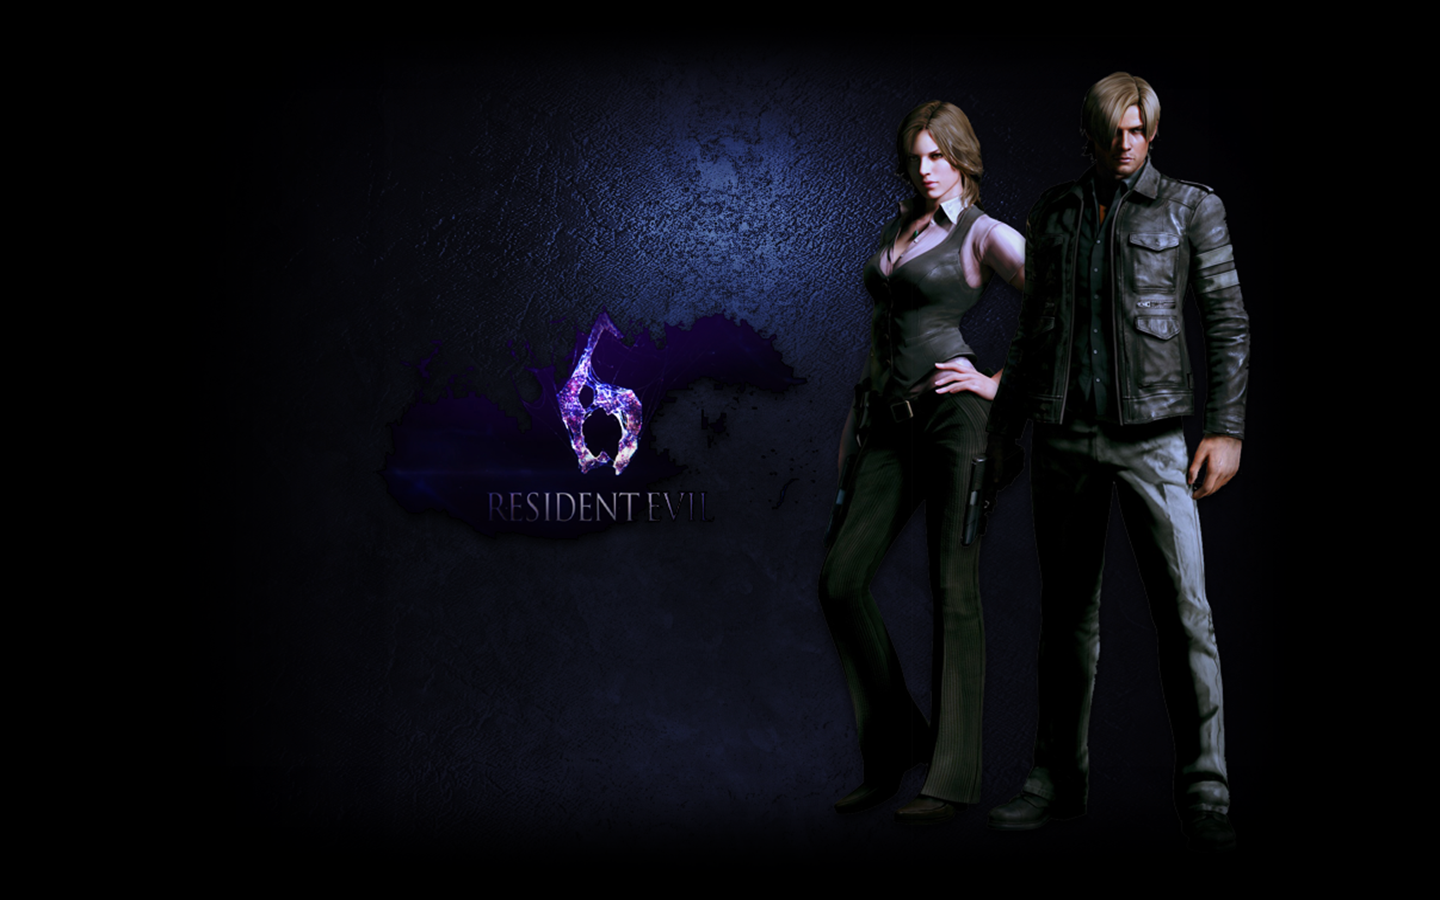  49 Resident  Evil  Live  Wallpaper  on WallpaperSafari